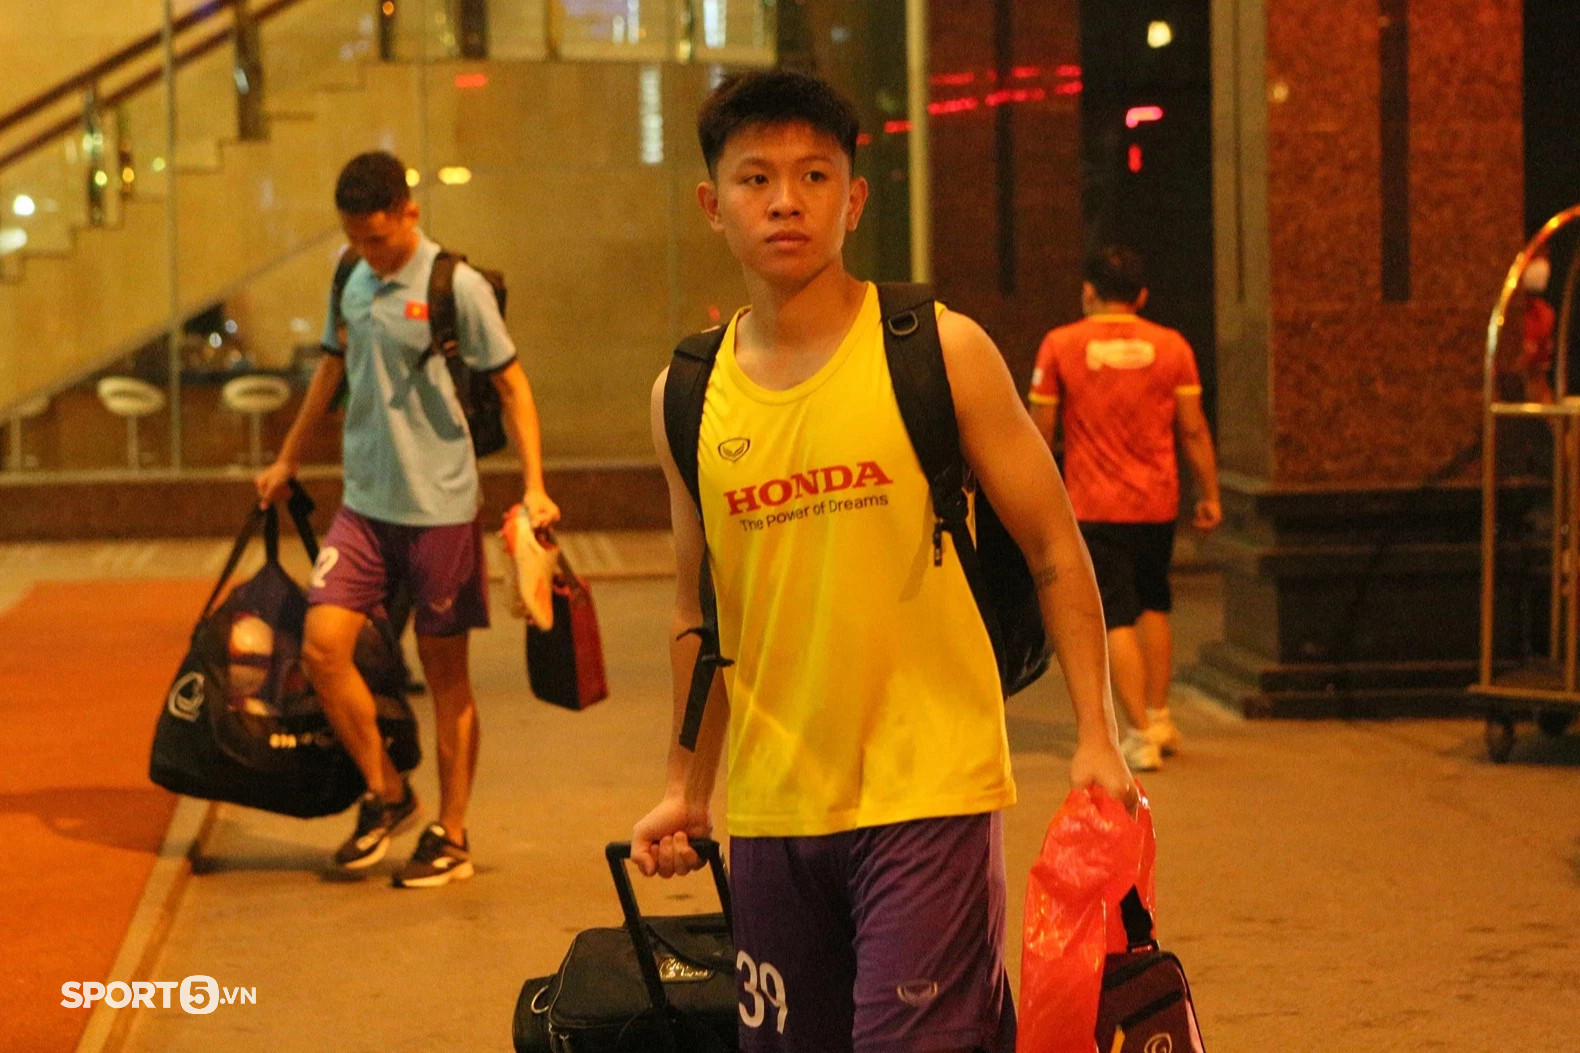 U23 Việt Nam trở về khách sạn với dáng vẻ mệt mỏi sau buổi tập luyện ngày 25/4 - Ảnh 7.